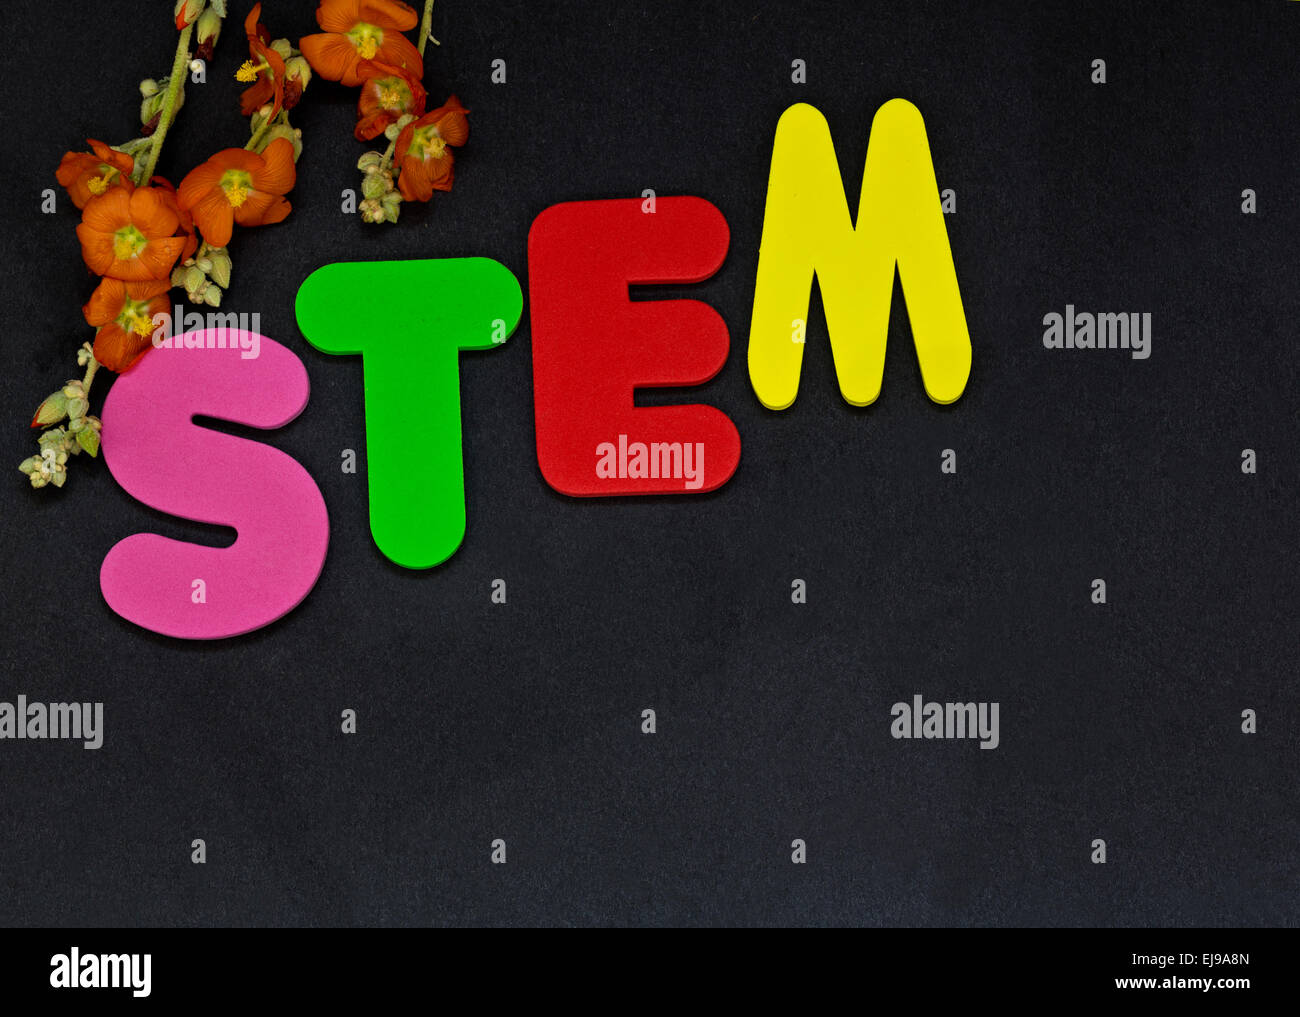 Educación STEM representados por las letras de tallo con flores destaca la importancia de la Ciencia, Tecnología, Ingeniería y Matemáticas. Foto de stock